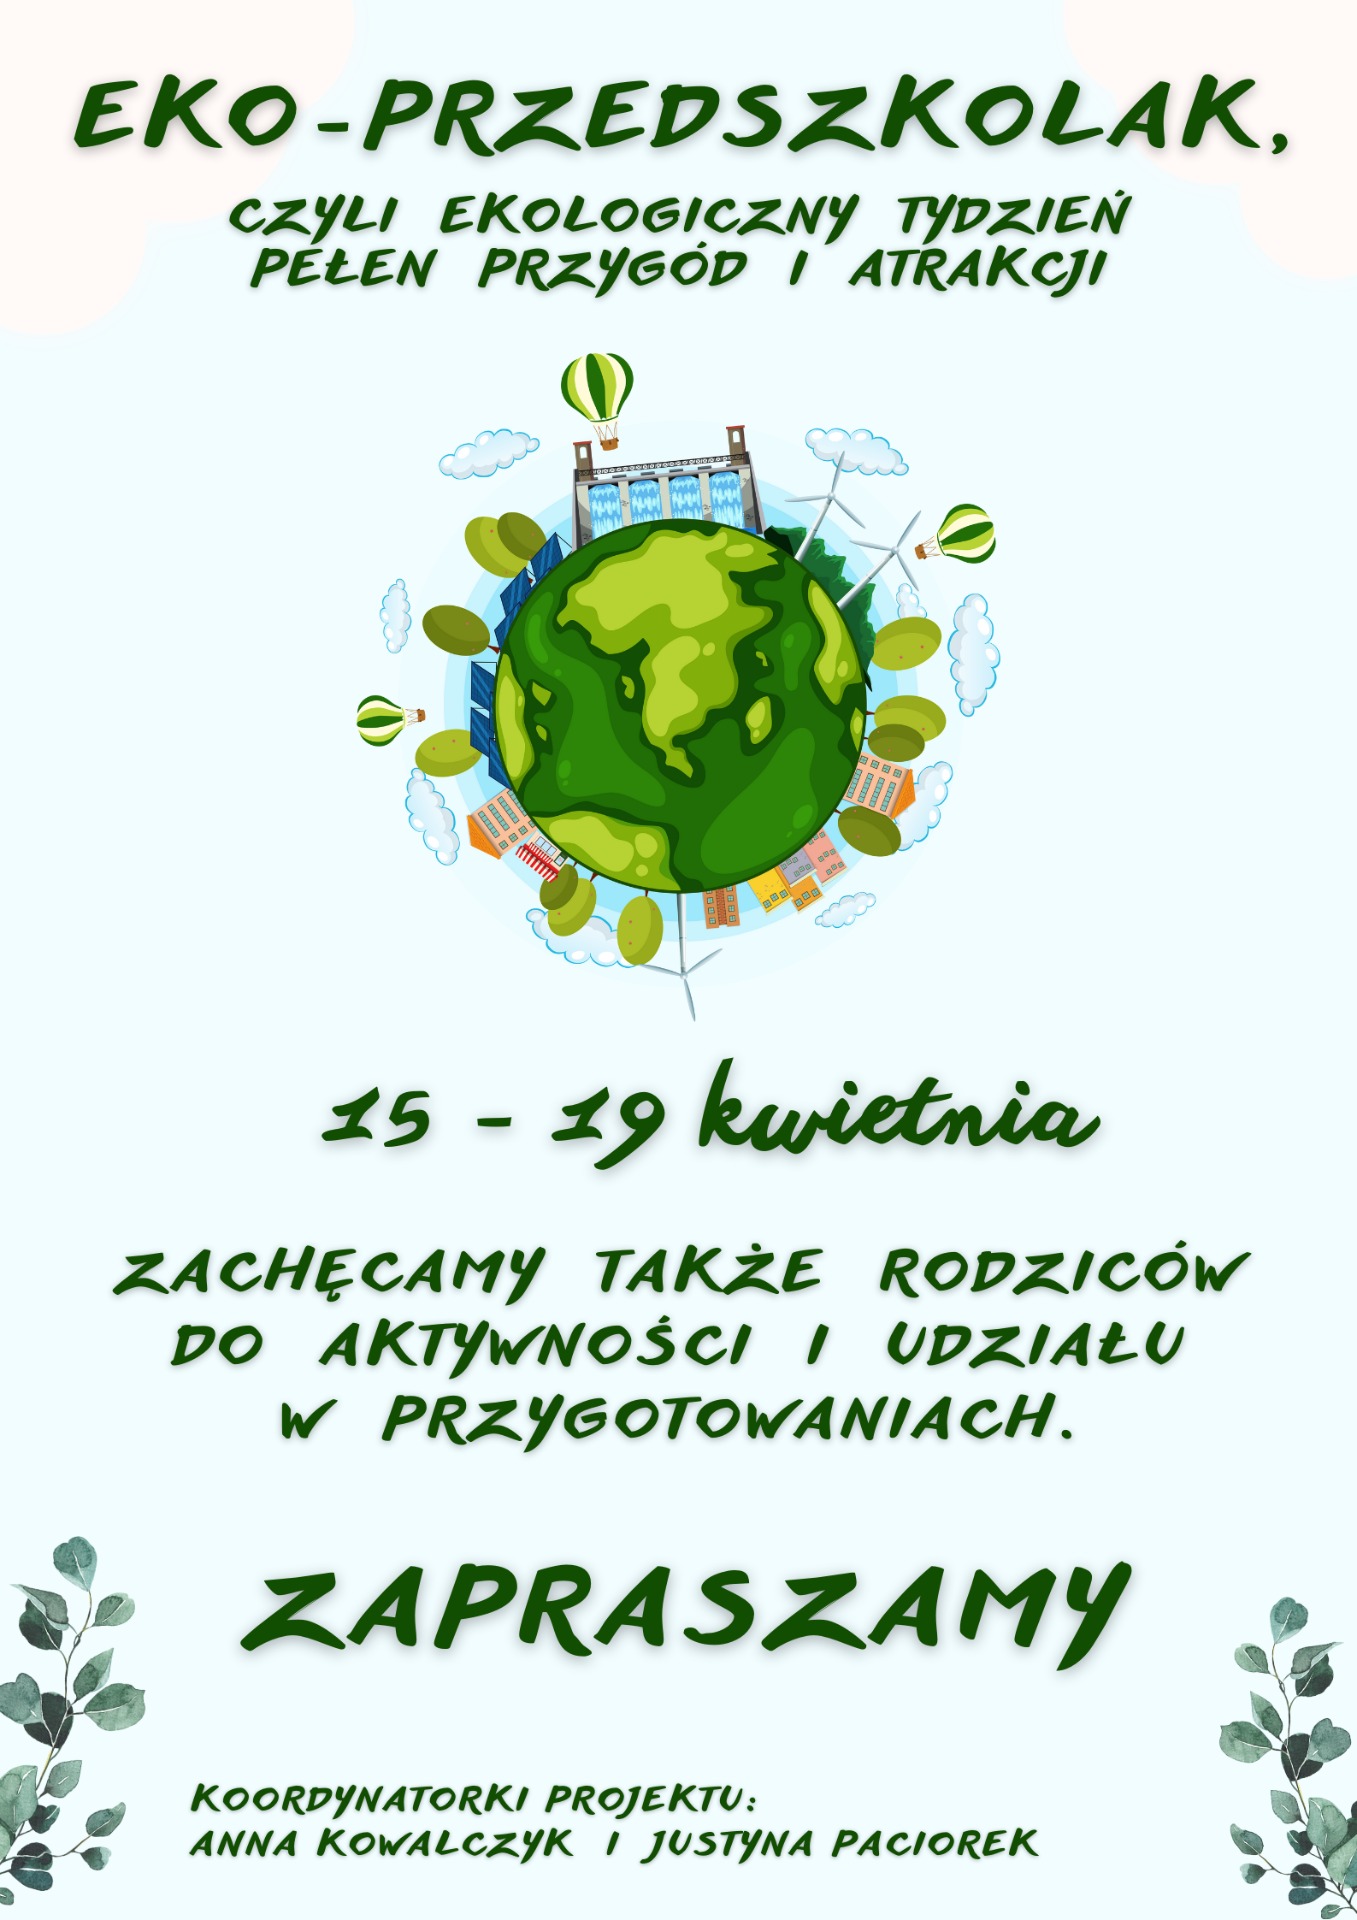 "EKO-PRZEDSZKOLAK" - ekologiczny projekt edukacyjny - Obrazek 1